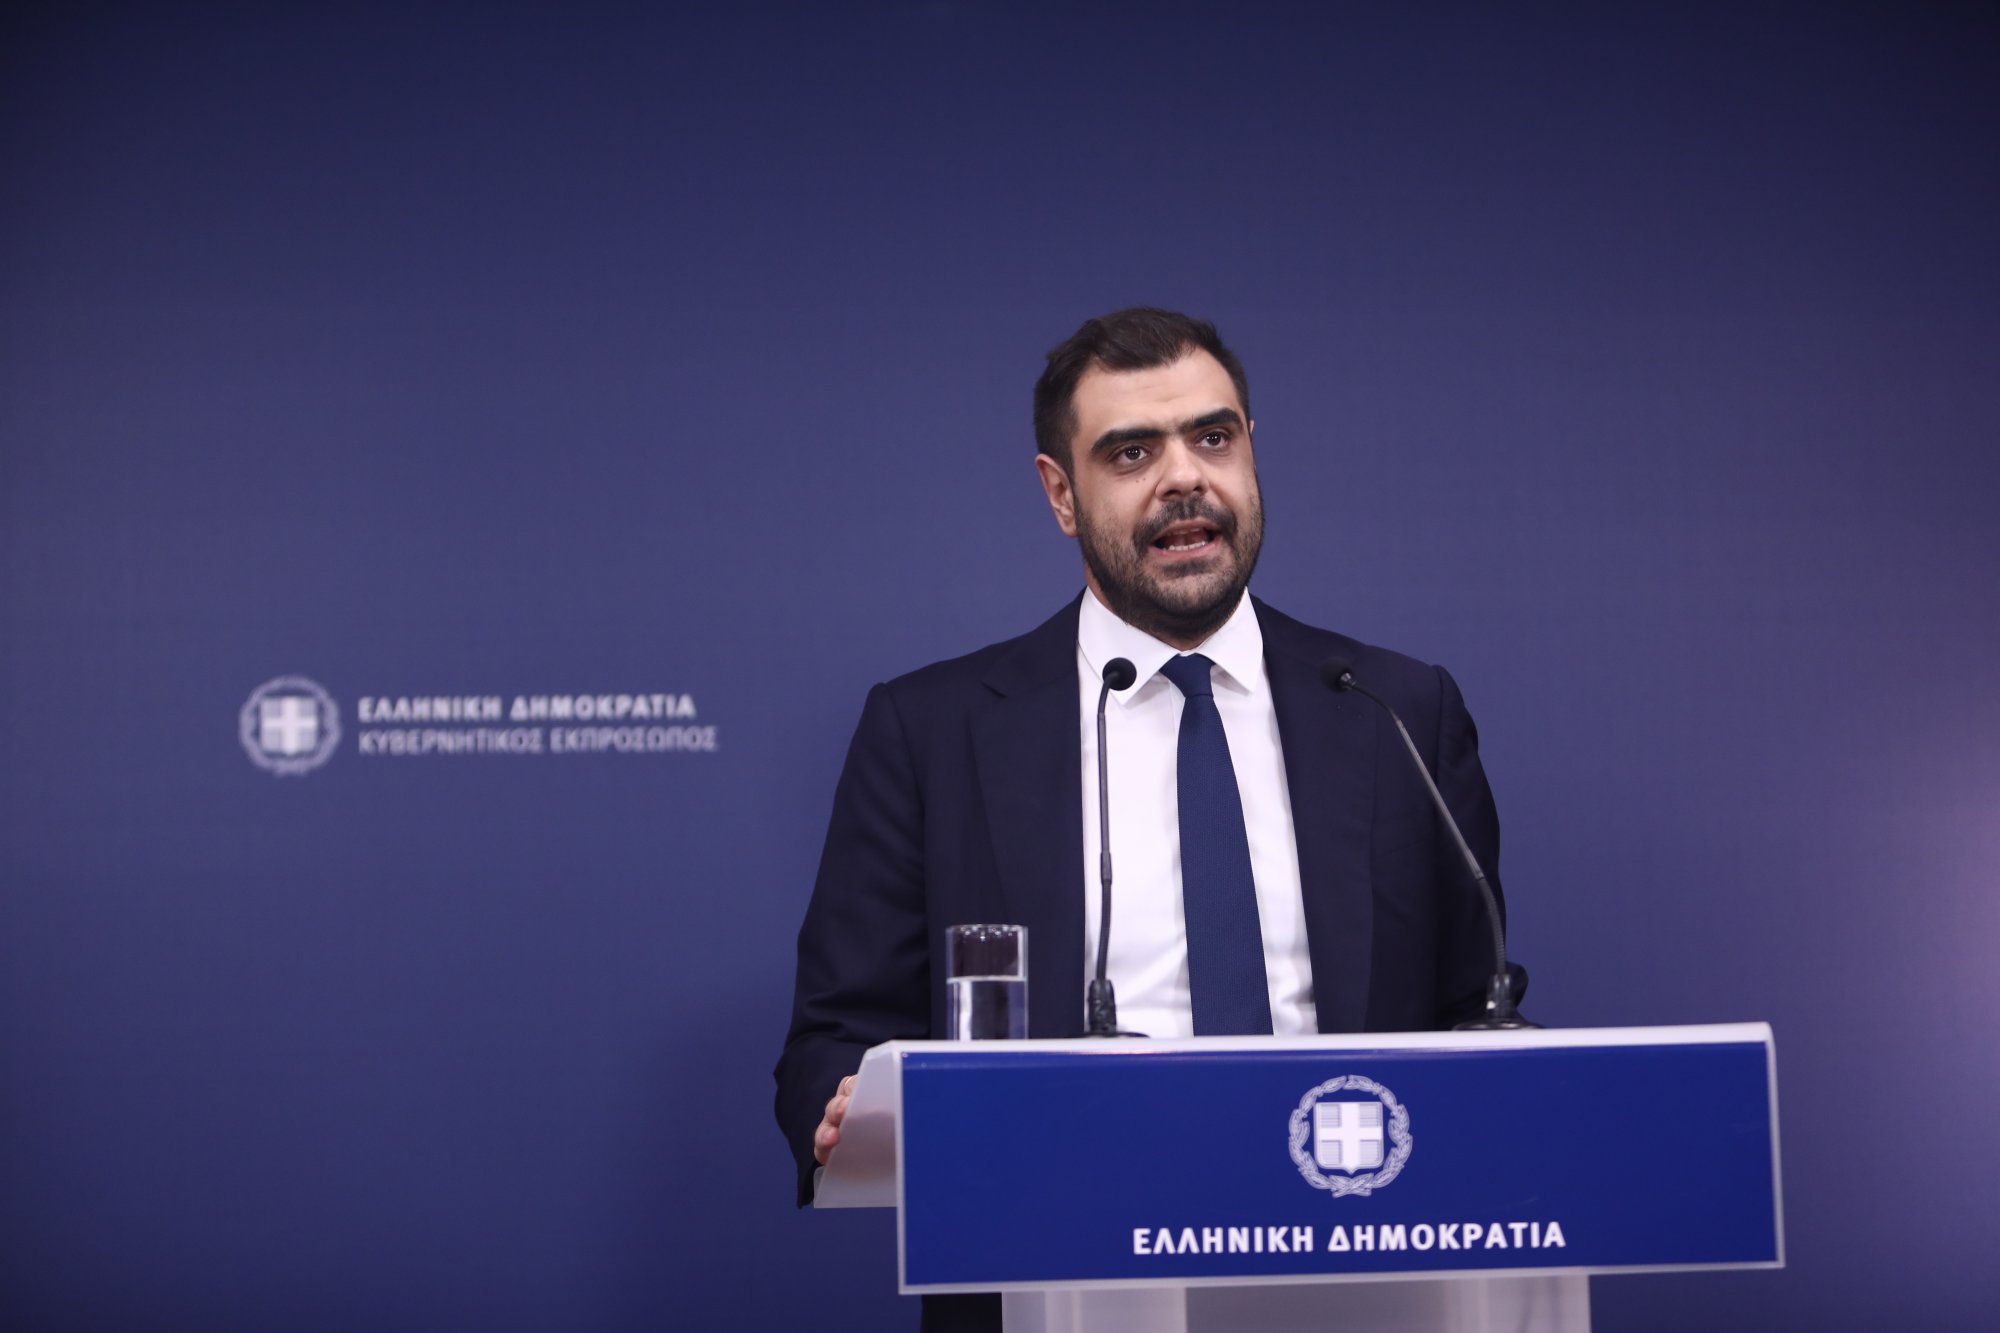 Π. Μαρινάκης: Ξεπέρασαν τις 12.000 οι ρυθμίσεις για οφειλές μέσω εξωδικαστικού τον Δεκέμβριο